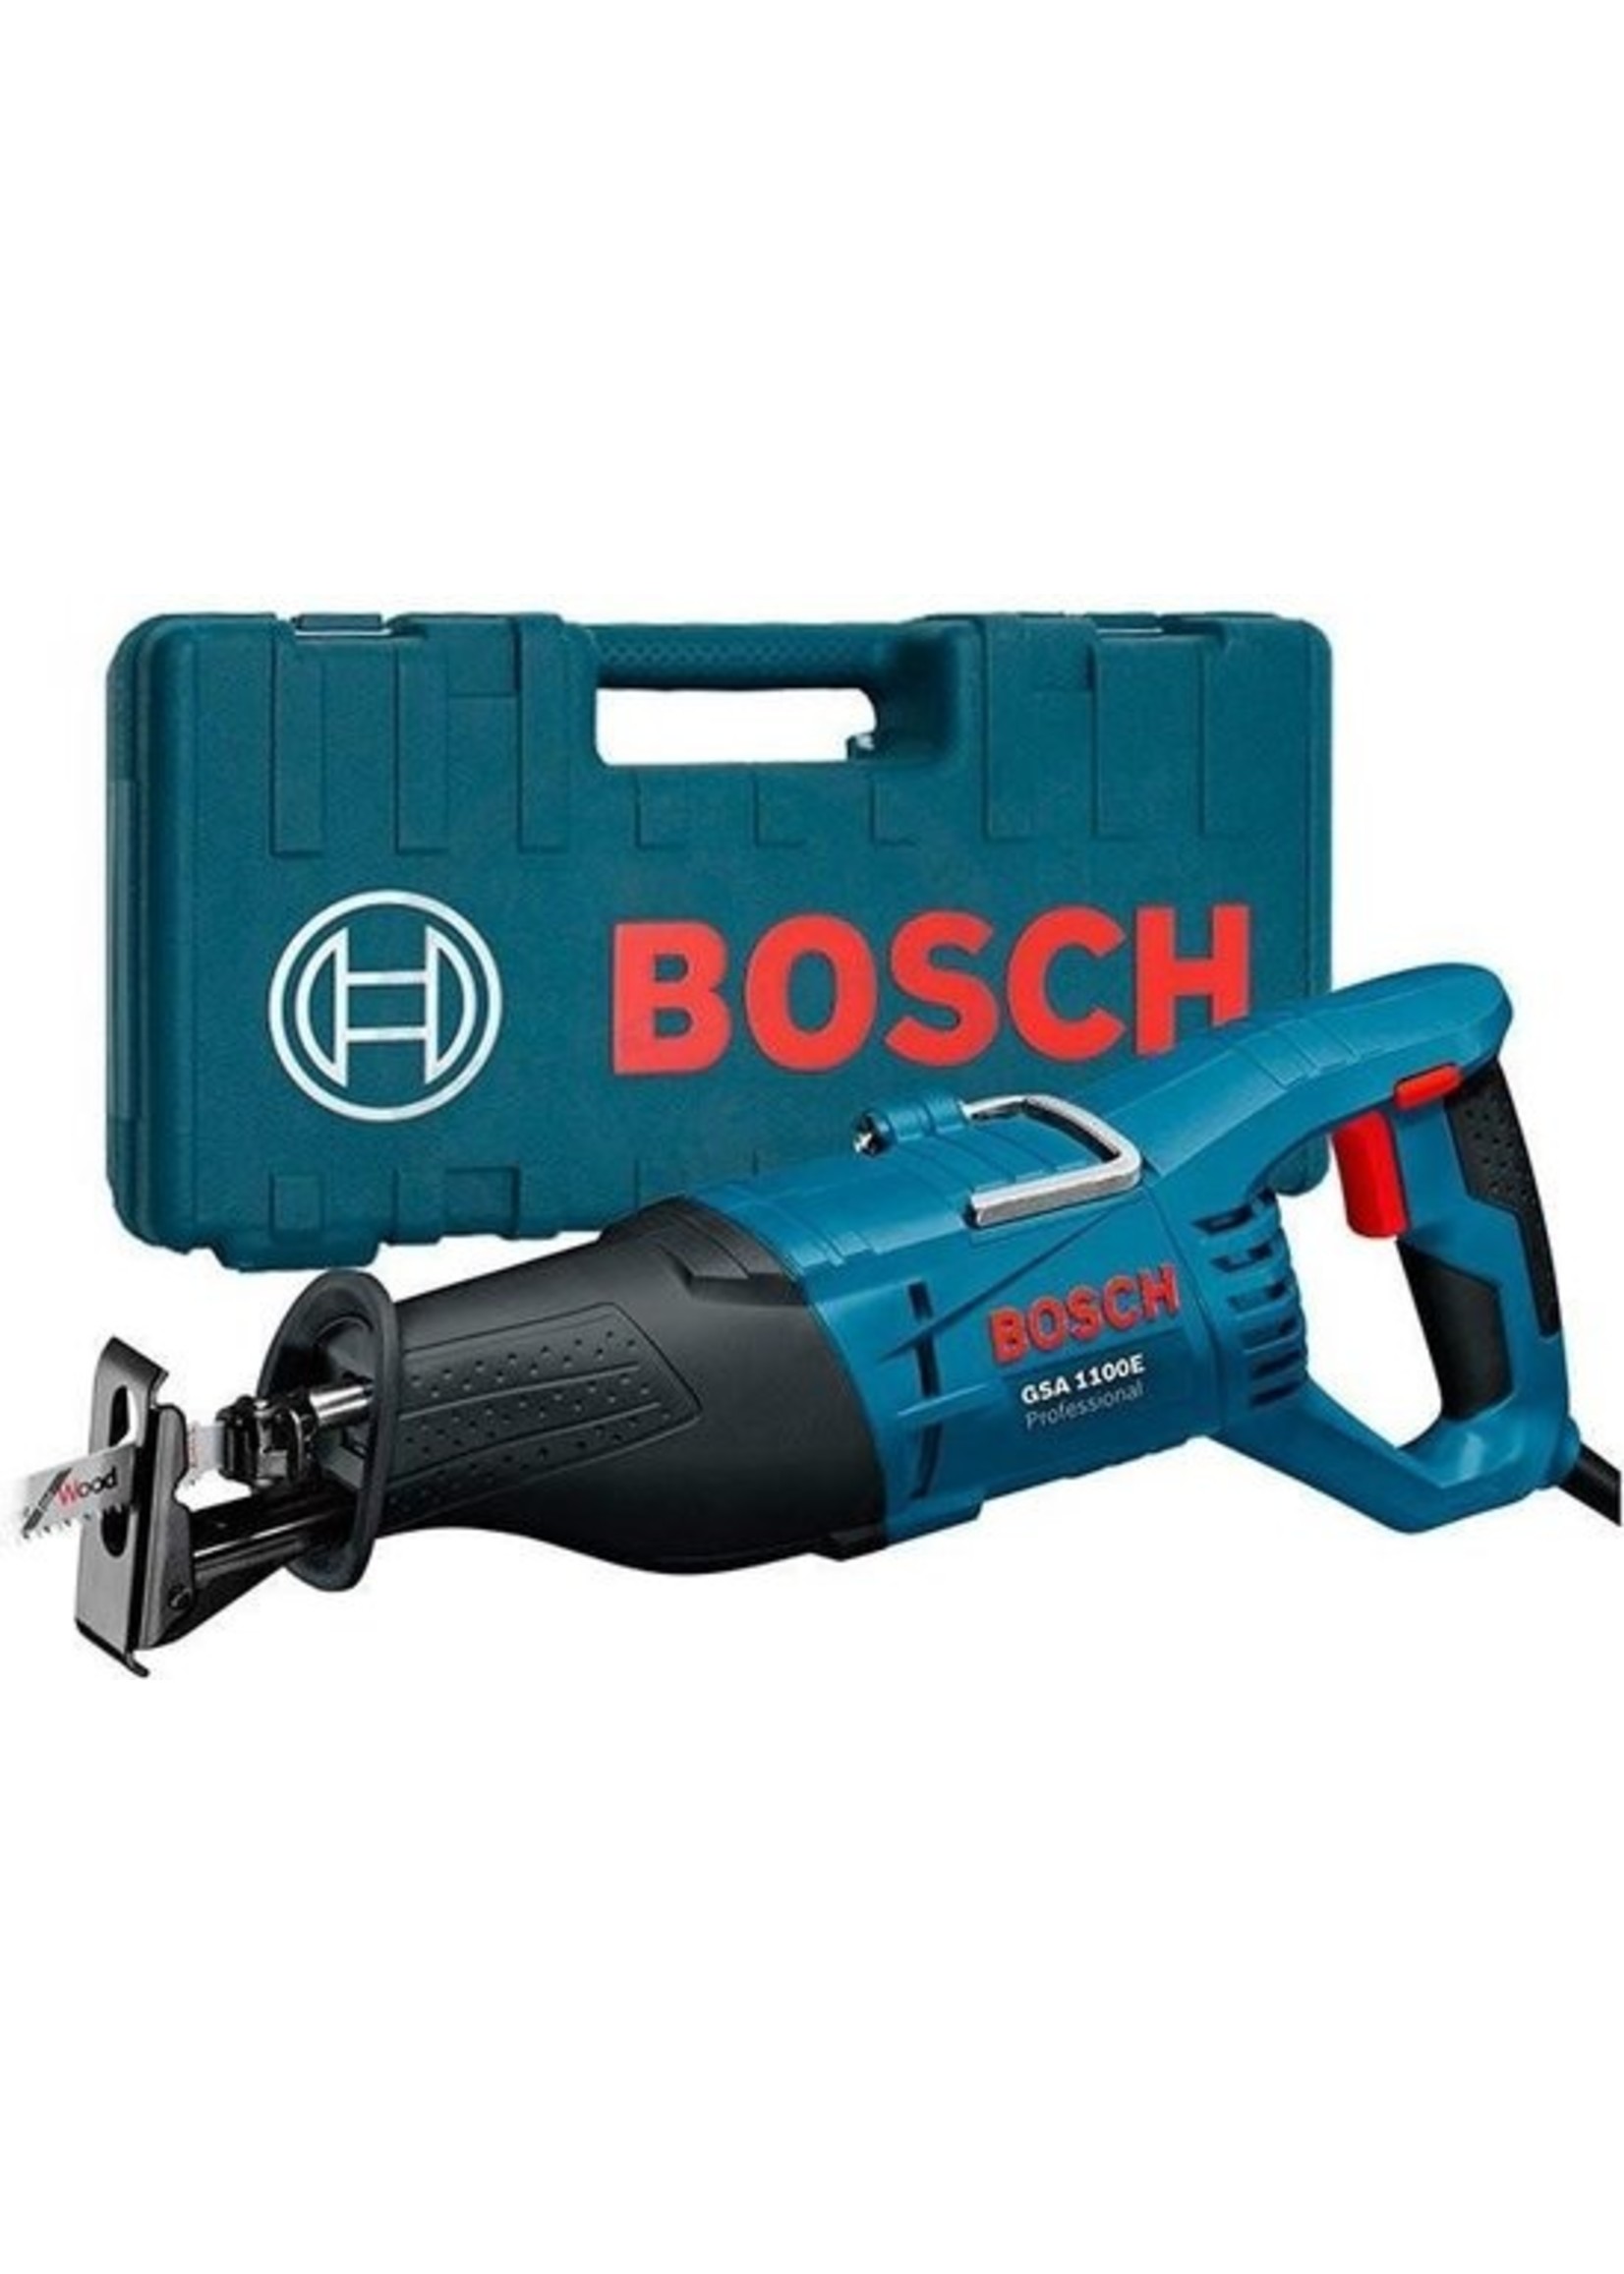 Bosch Bosch Professional GSA1100E Reciprozaag  - 1100 Watt - Met 2 Zaagbladen en Opbergkoffer